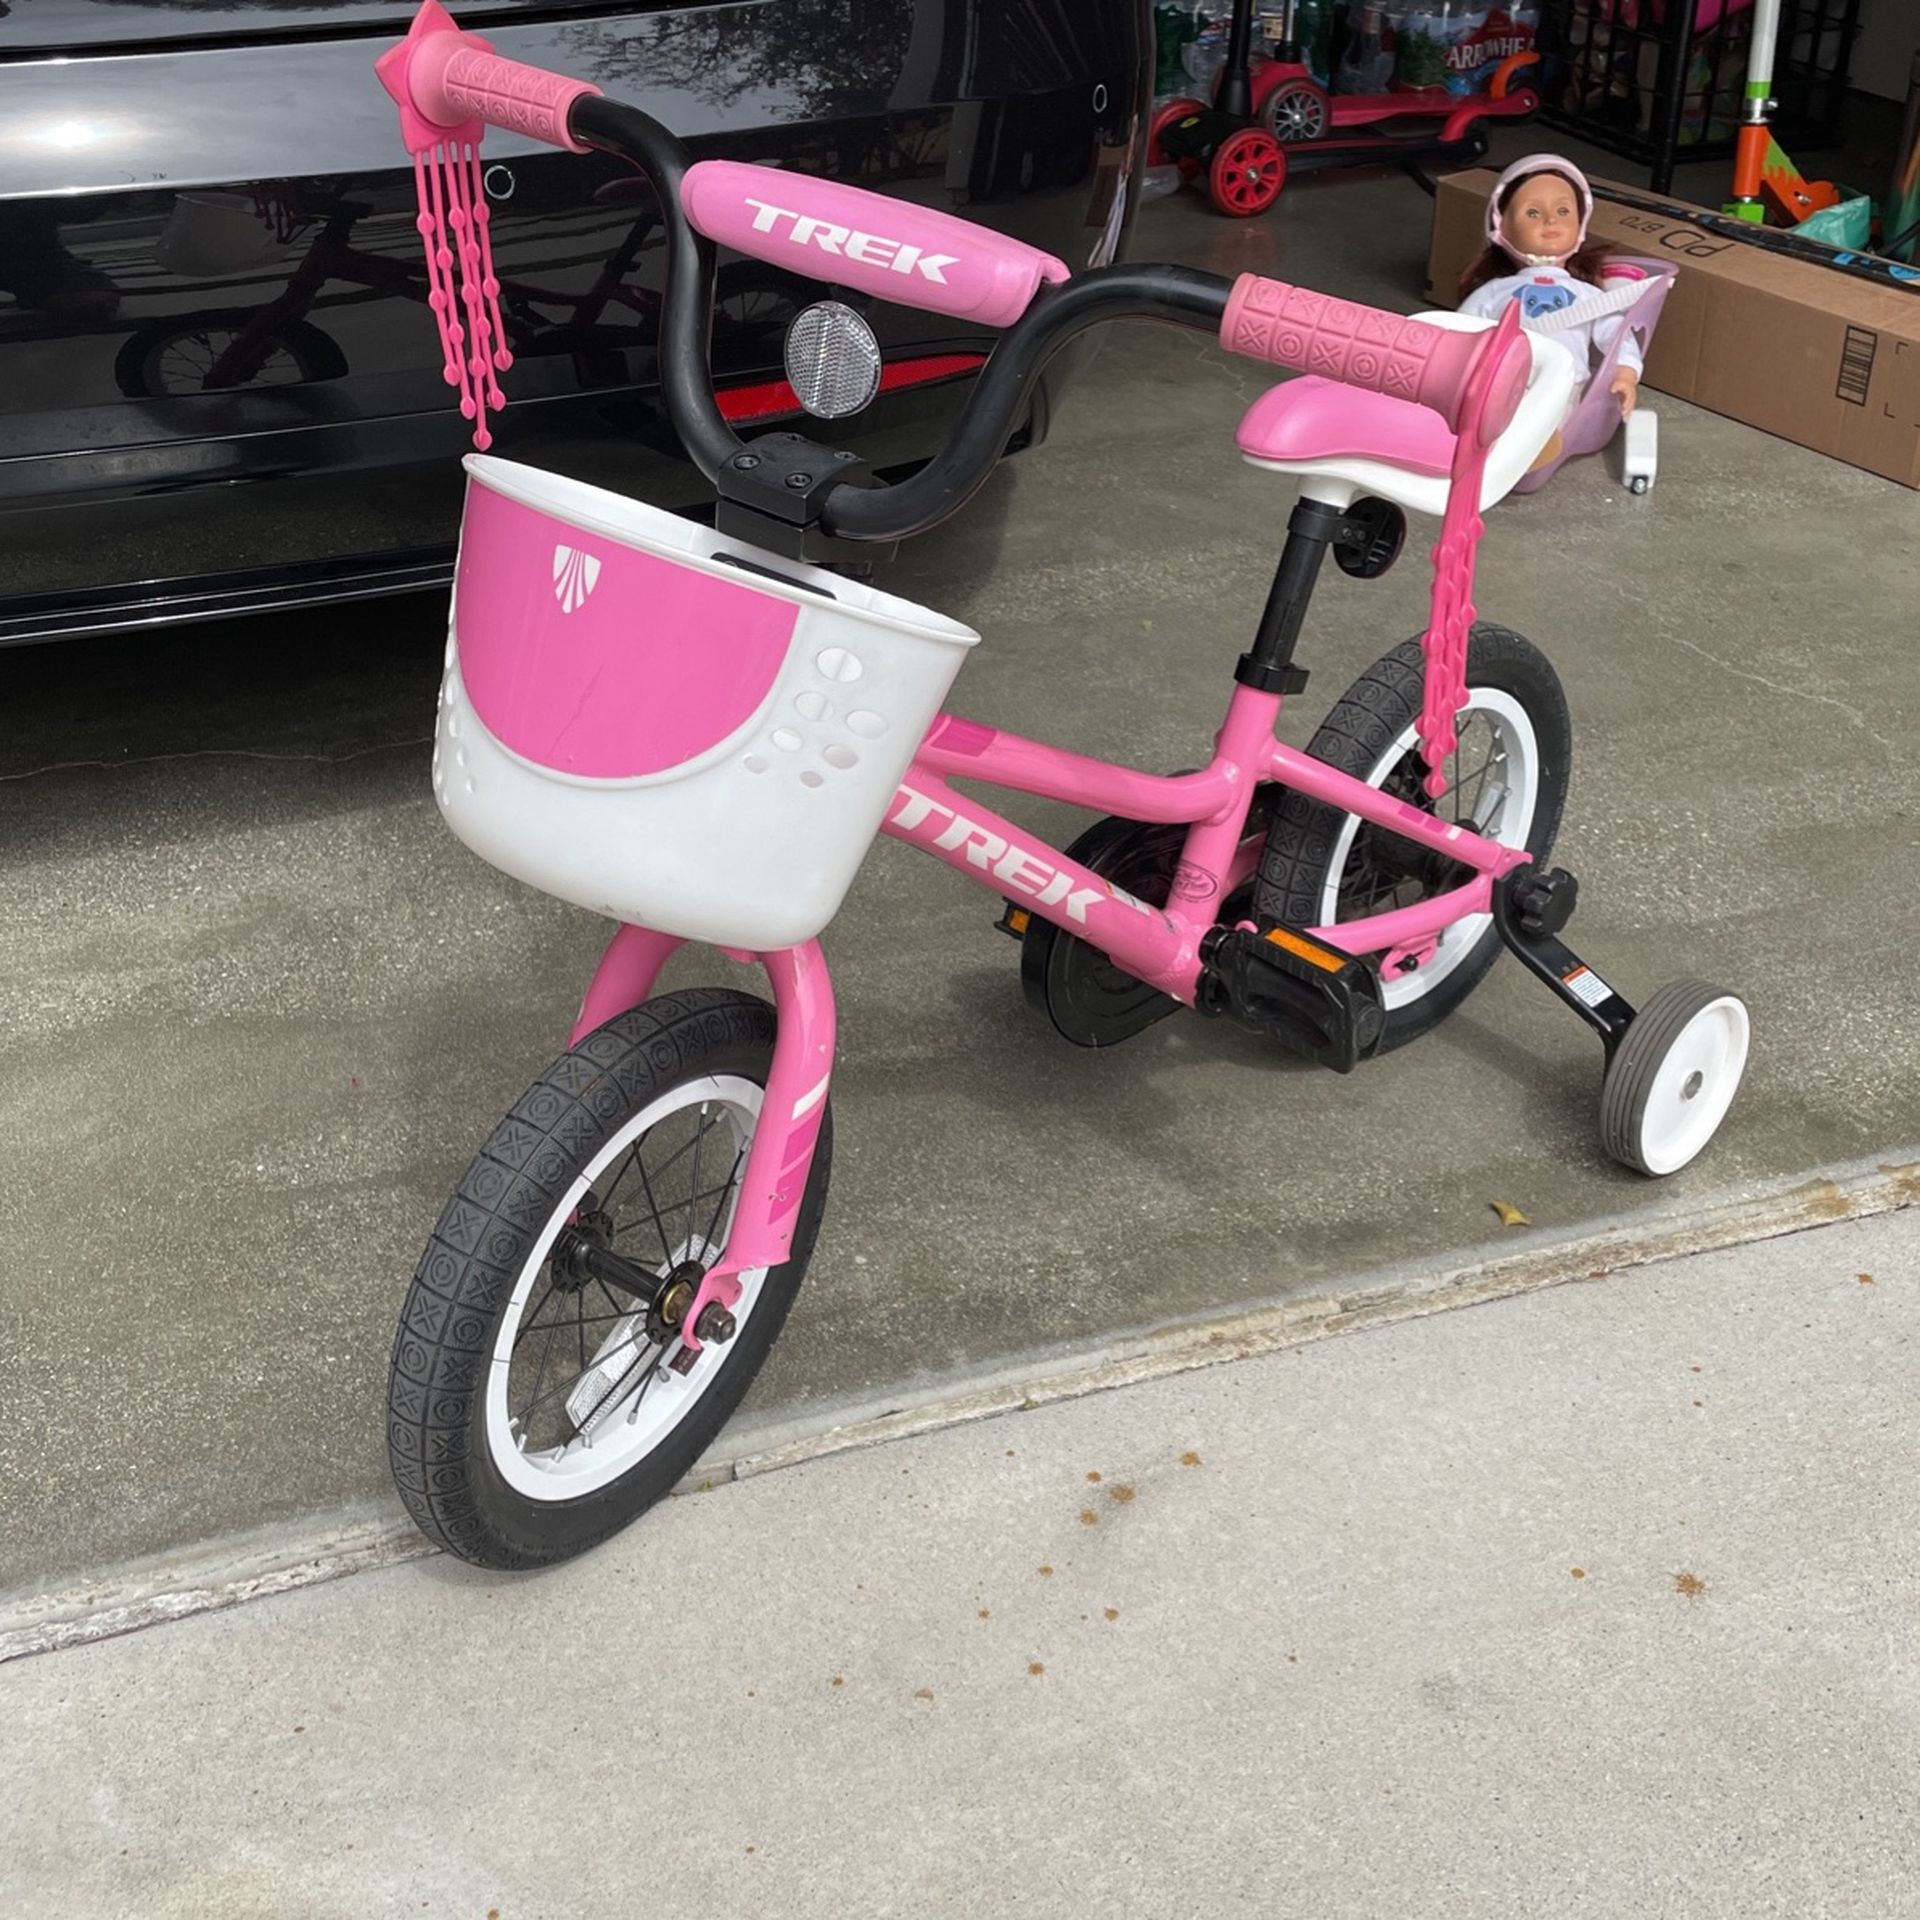 12” Trek Pink Girls bike